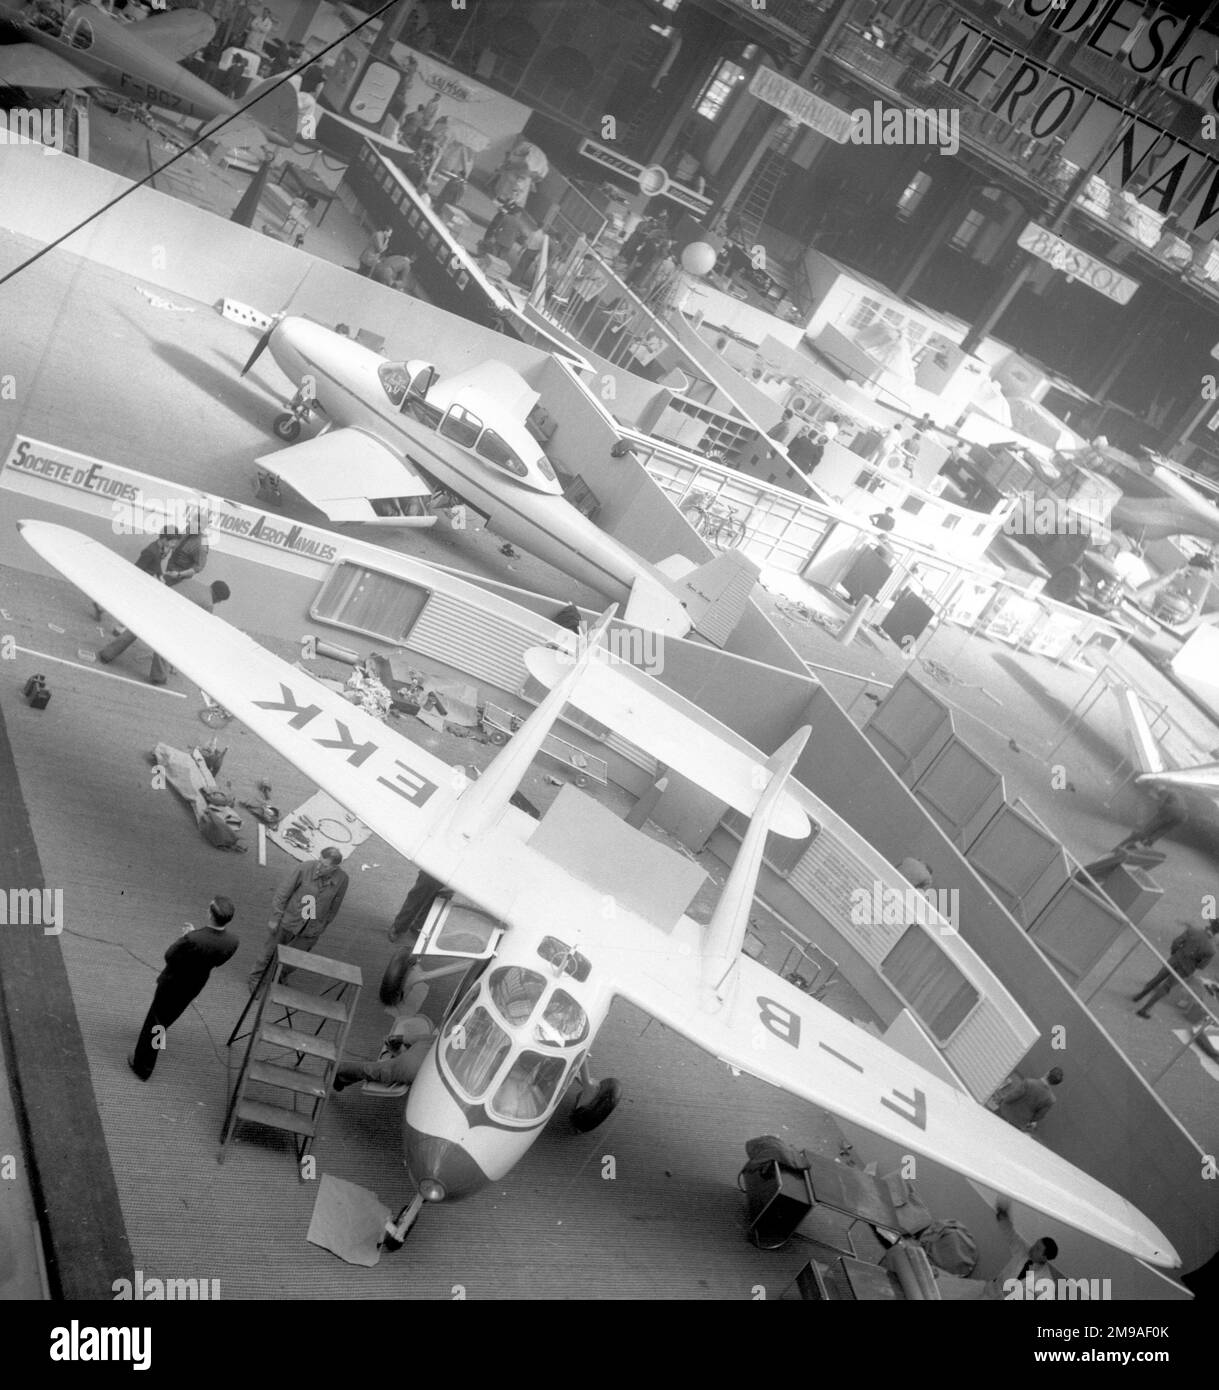 XVIIIeme Salon Aeronautique du Paris 1949 im Grand Palais im Zentrum von Paris (am Flughafen Orly wurden Flugvorführungen durchgeführt). Mit Blick auf den SECAN und Ryan steht ein SCCAN Courlis bzw. Ryan Navion. Stockfoto